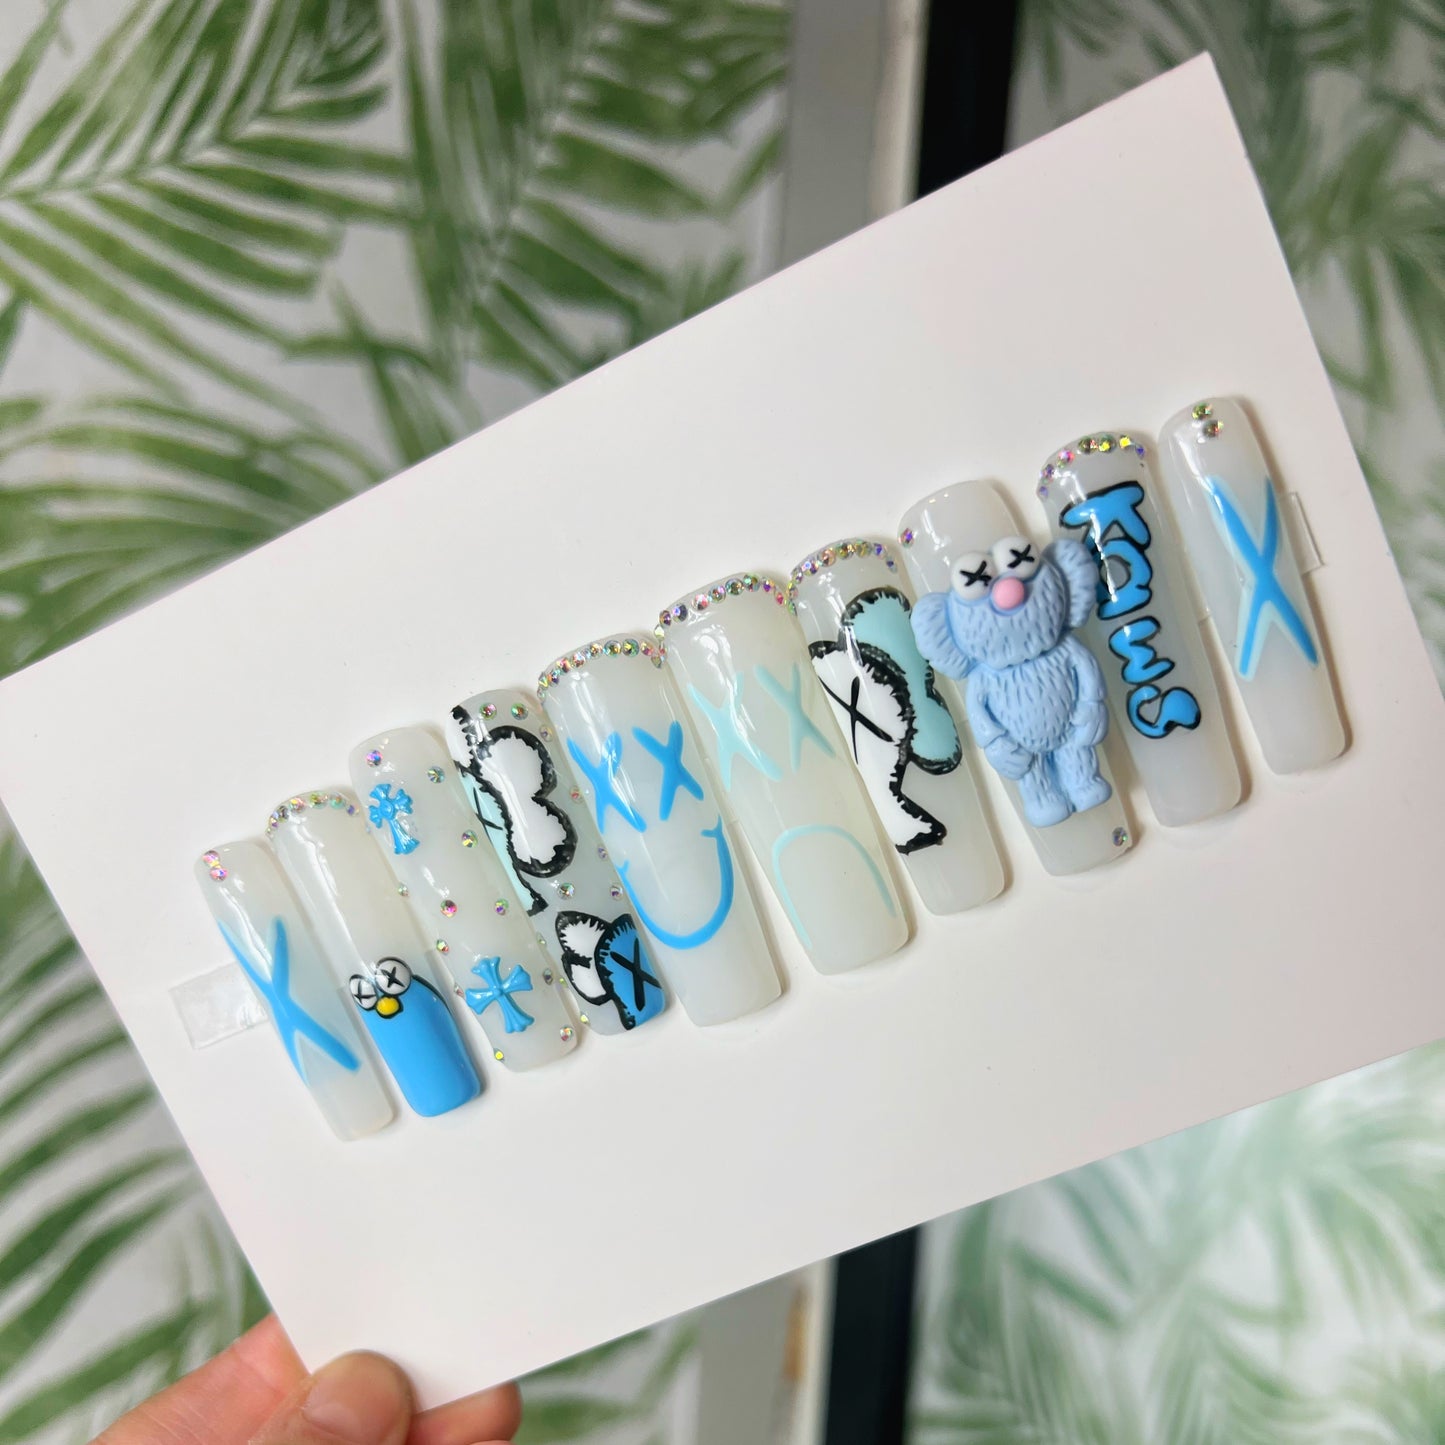 Kaws charms Acrylic Press on nails